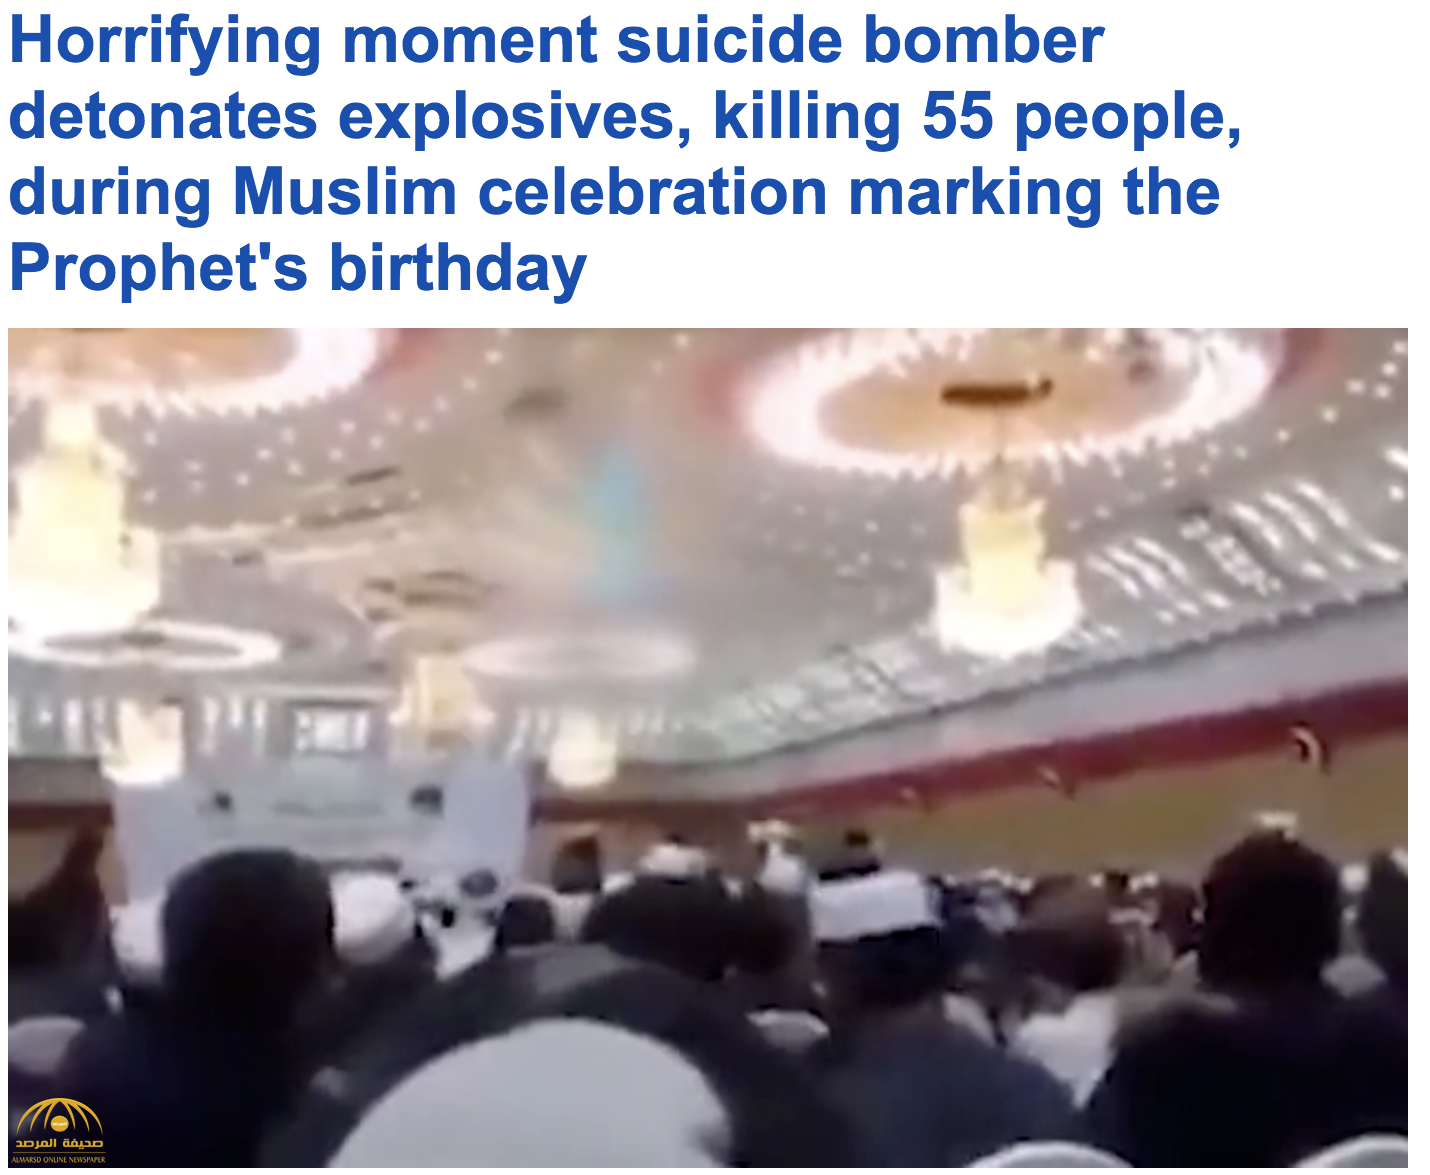 ترجمة حصرية : شاهد لحظة تفجير انتحاري جسده داخل قاعة أثناء احتفال بذكرى المولد النبوي بأفغانستان